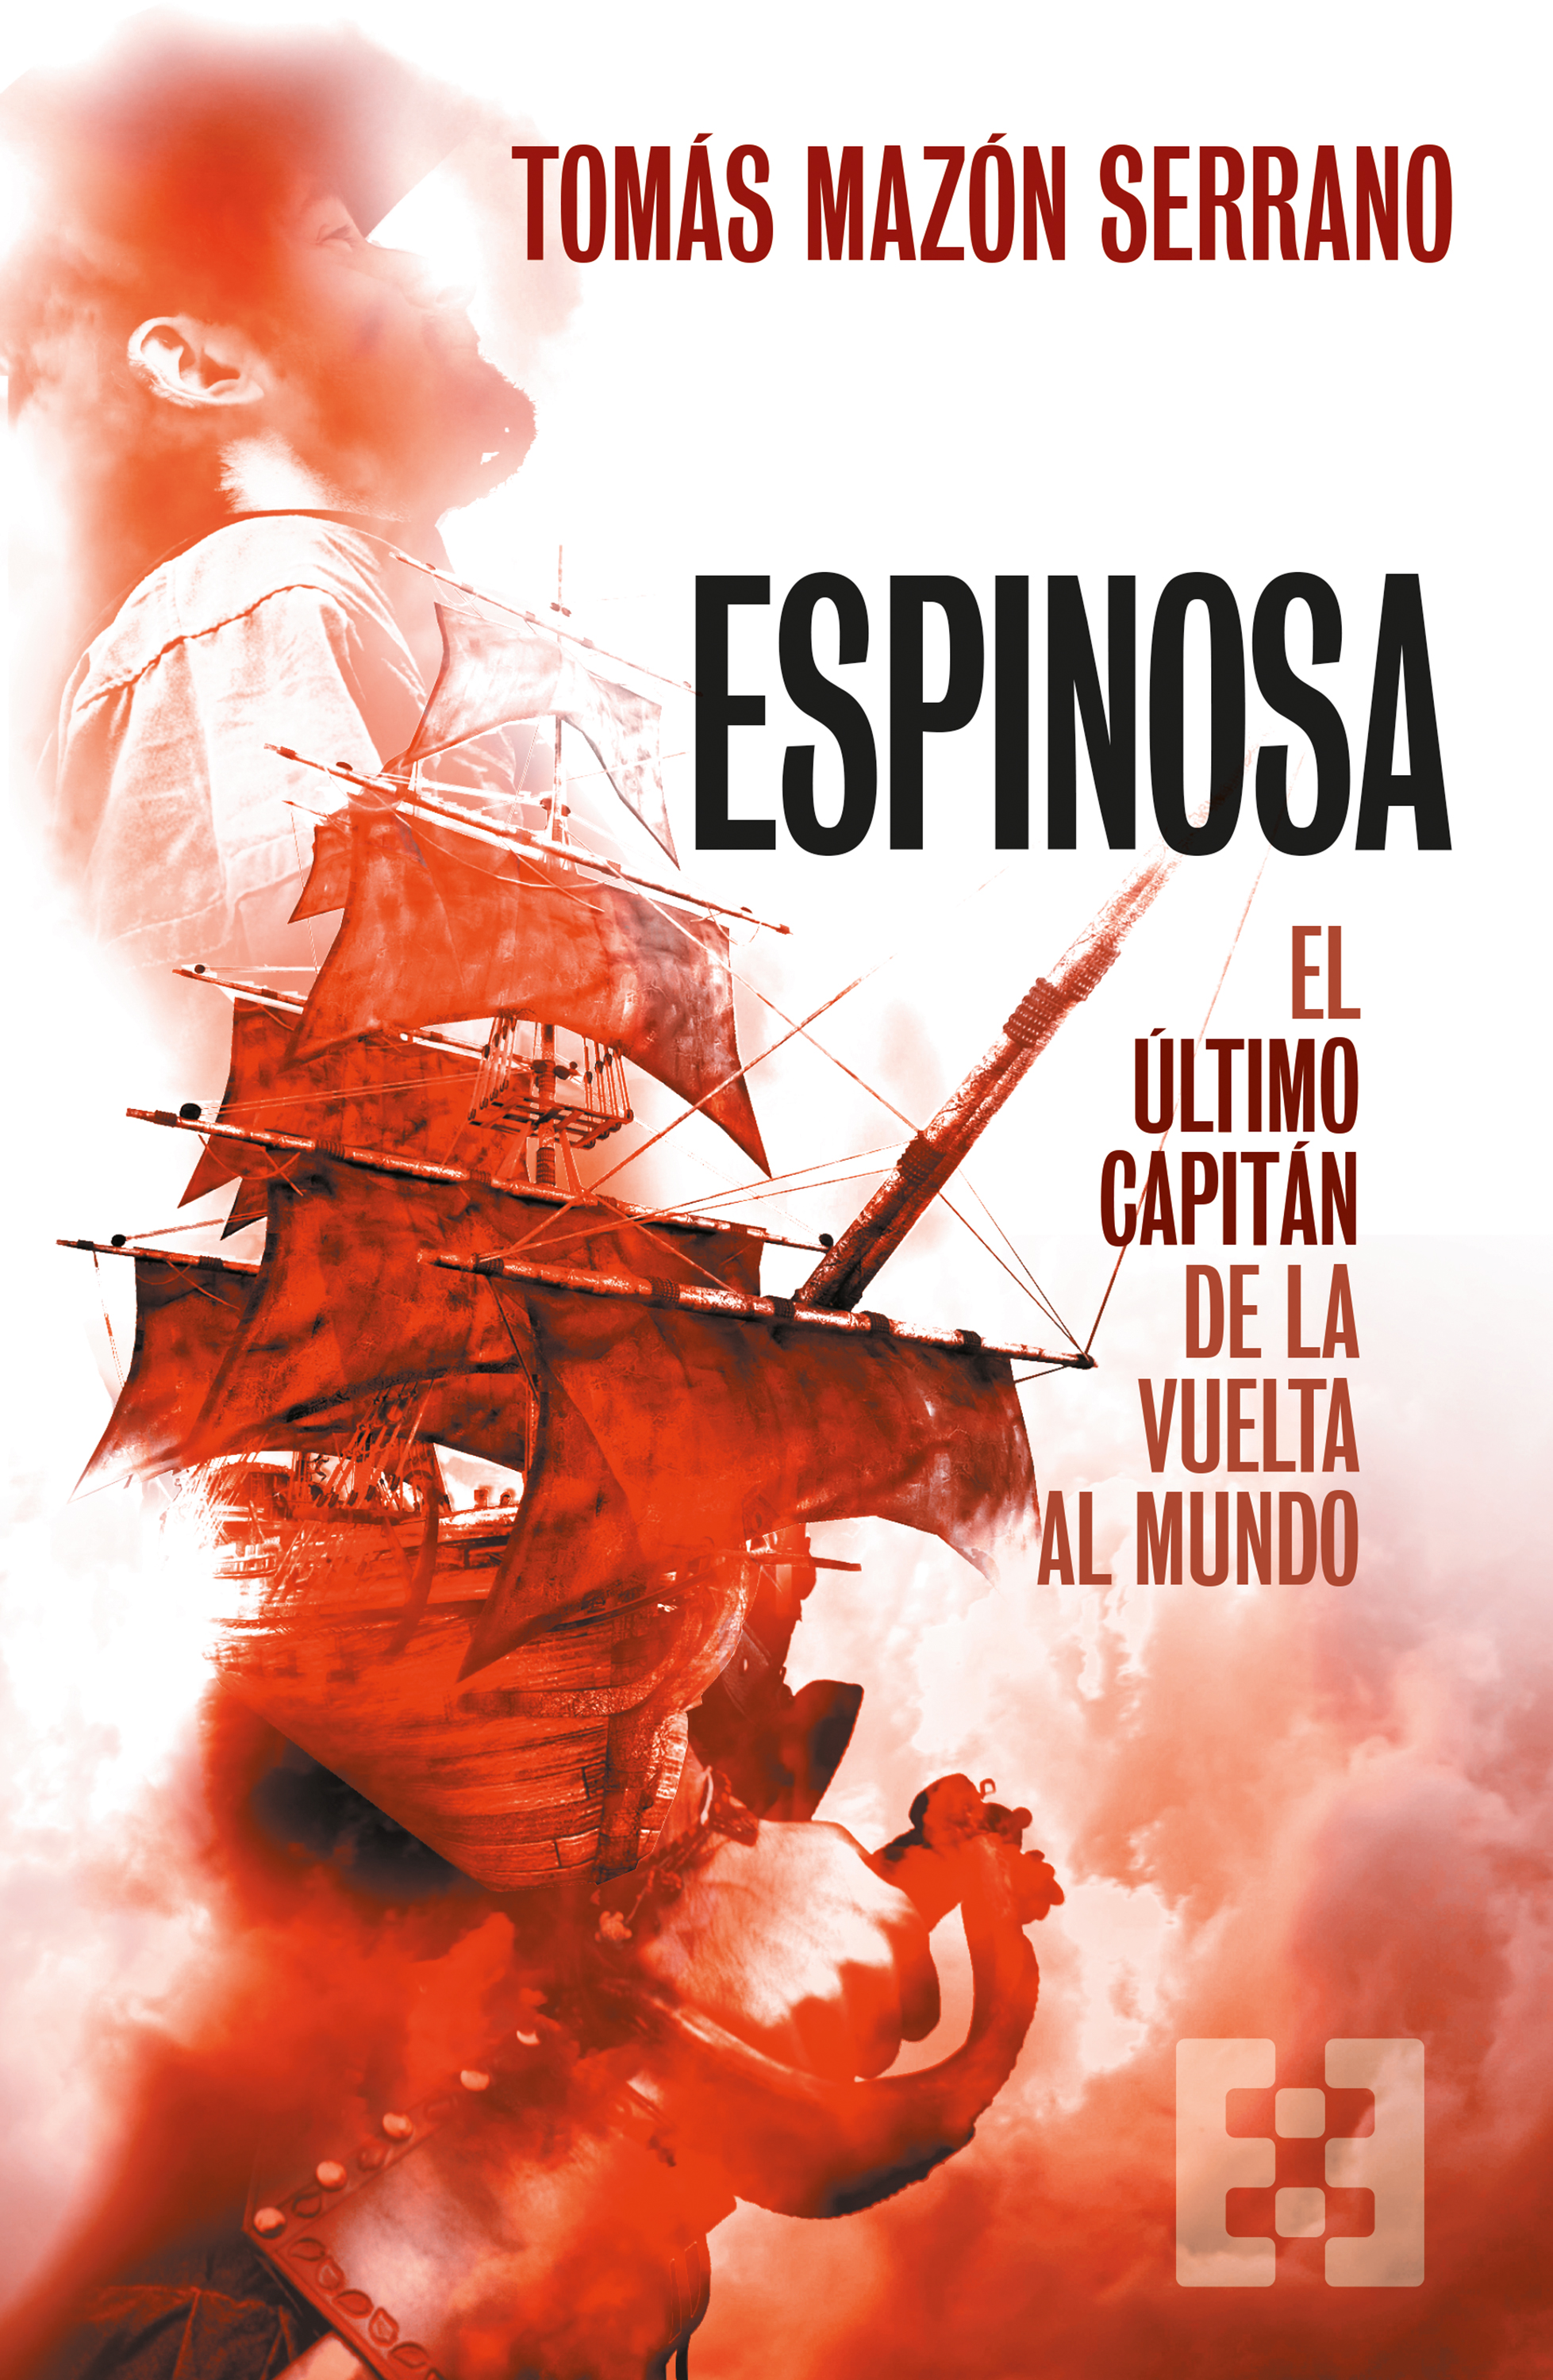 Espinosa, el último capitán de la vuelta al mundo (9788413391137)